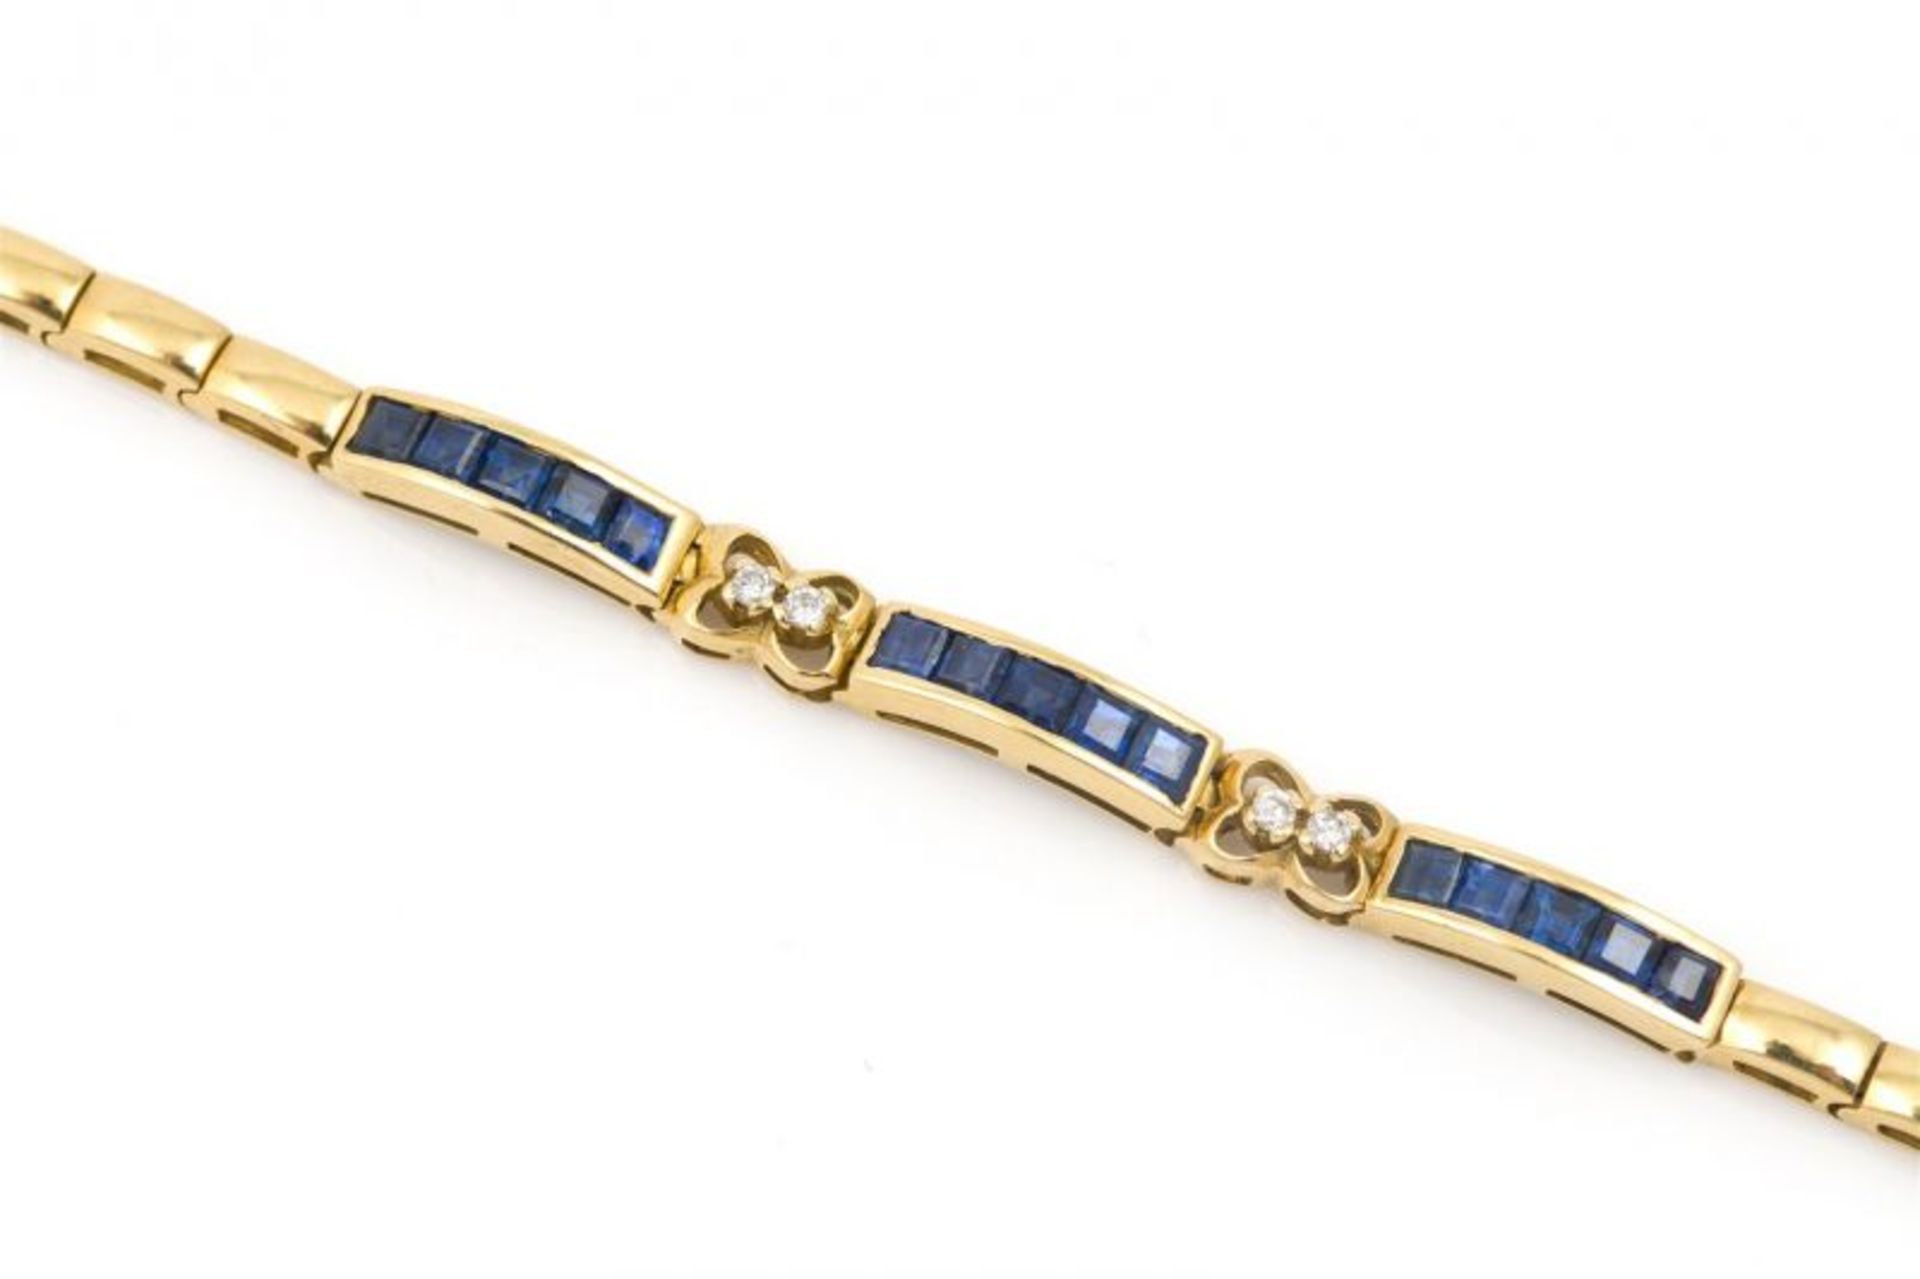 18 krt. gouden armband bezet met 15 blauwe saffiertjes van totaal 2.22 karaat en 4 diamantjes van